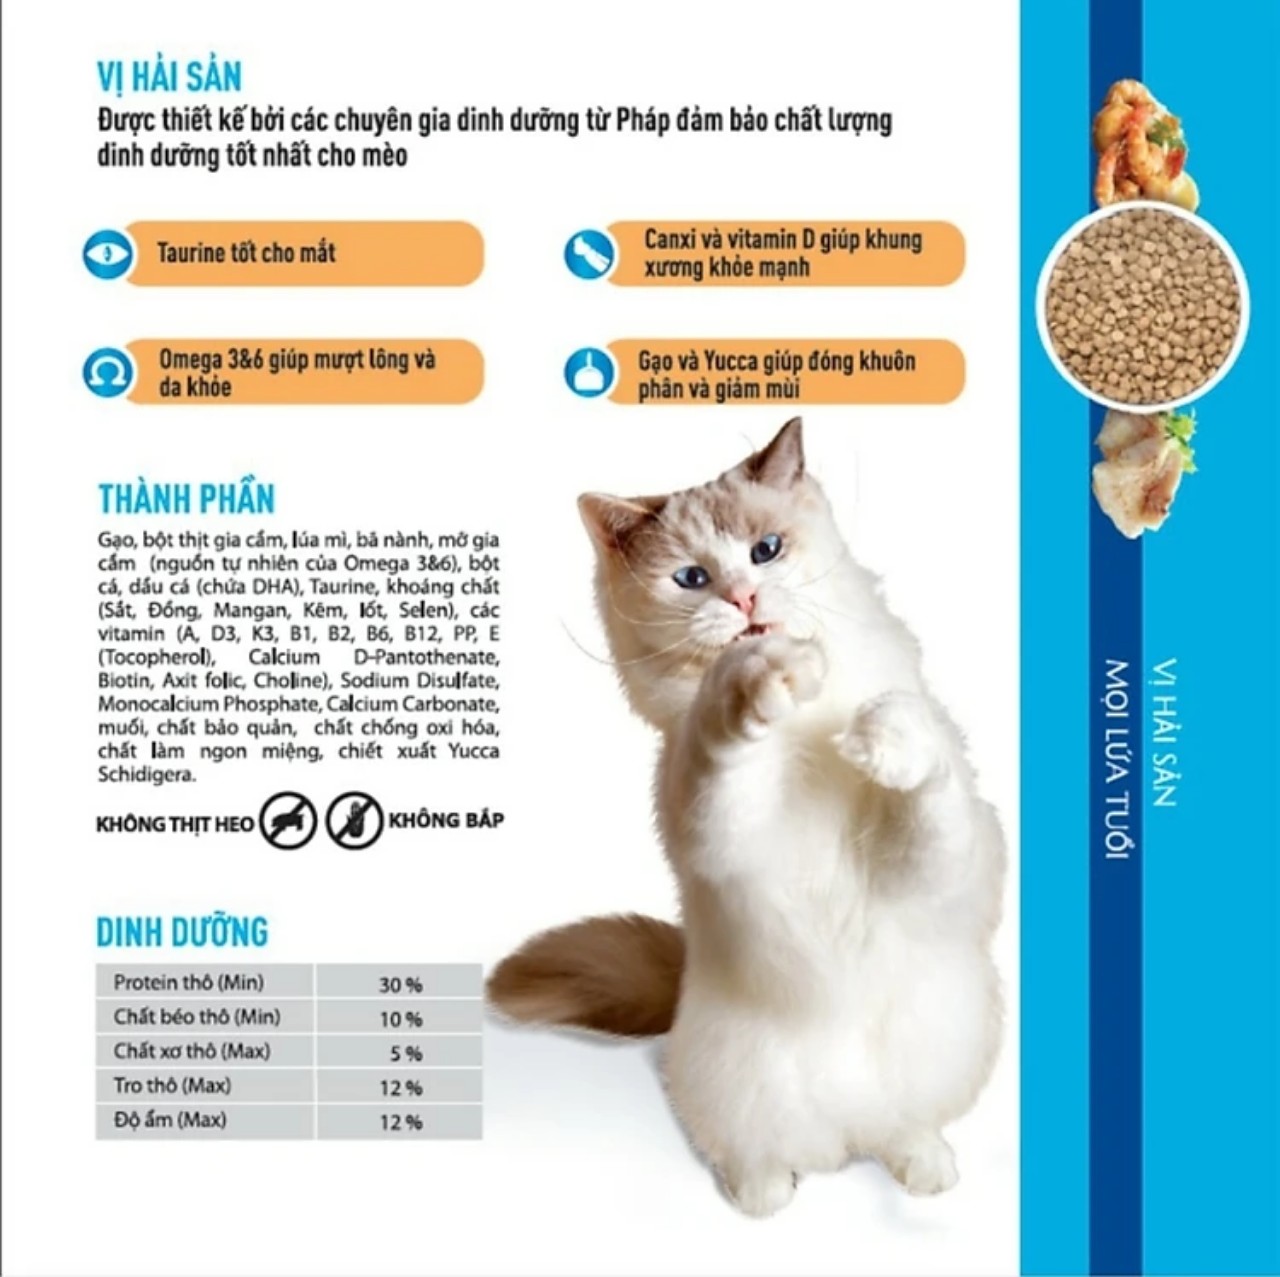 [Siêu Sale] COMBO 5 gói thức ăn mèo Minino Yum cho mọi lứa tuổi vị hải sản - Minino Yum gói 350g